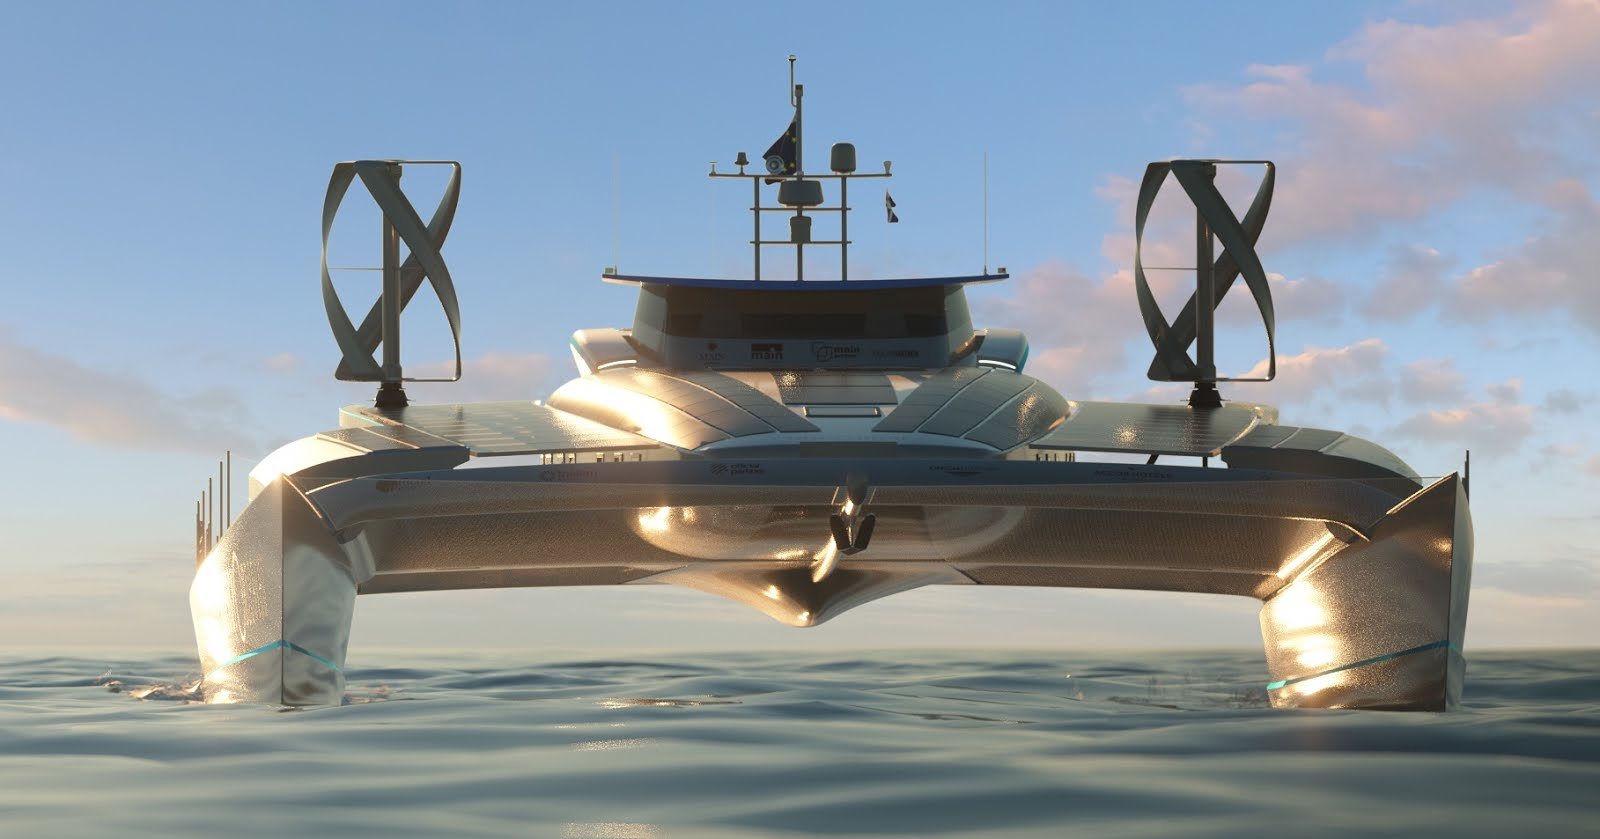 Морское судно на альтернативных источниках энергии — миф или ближайшее будущее?